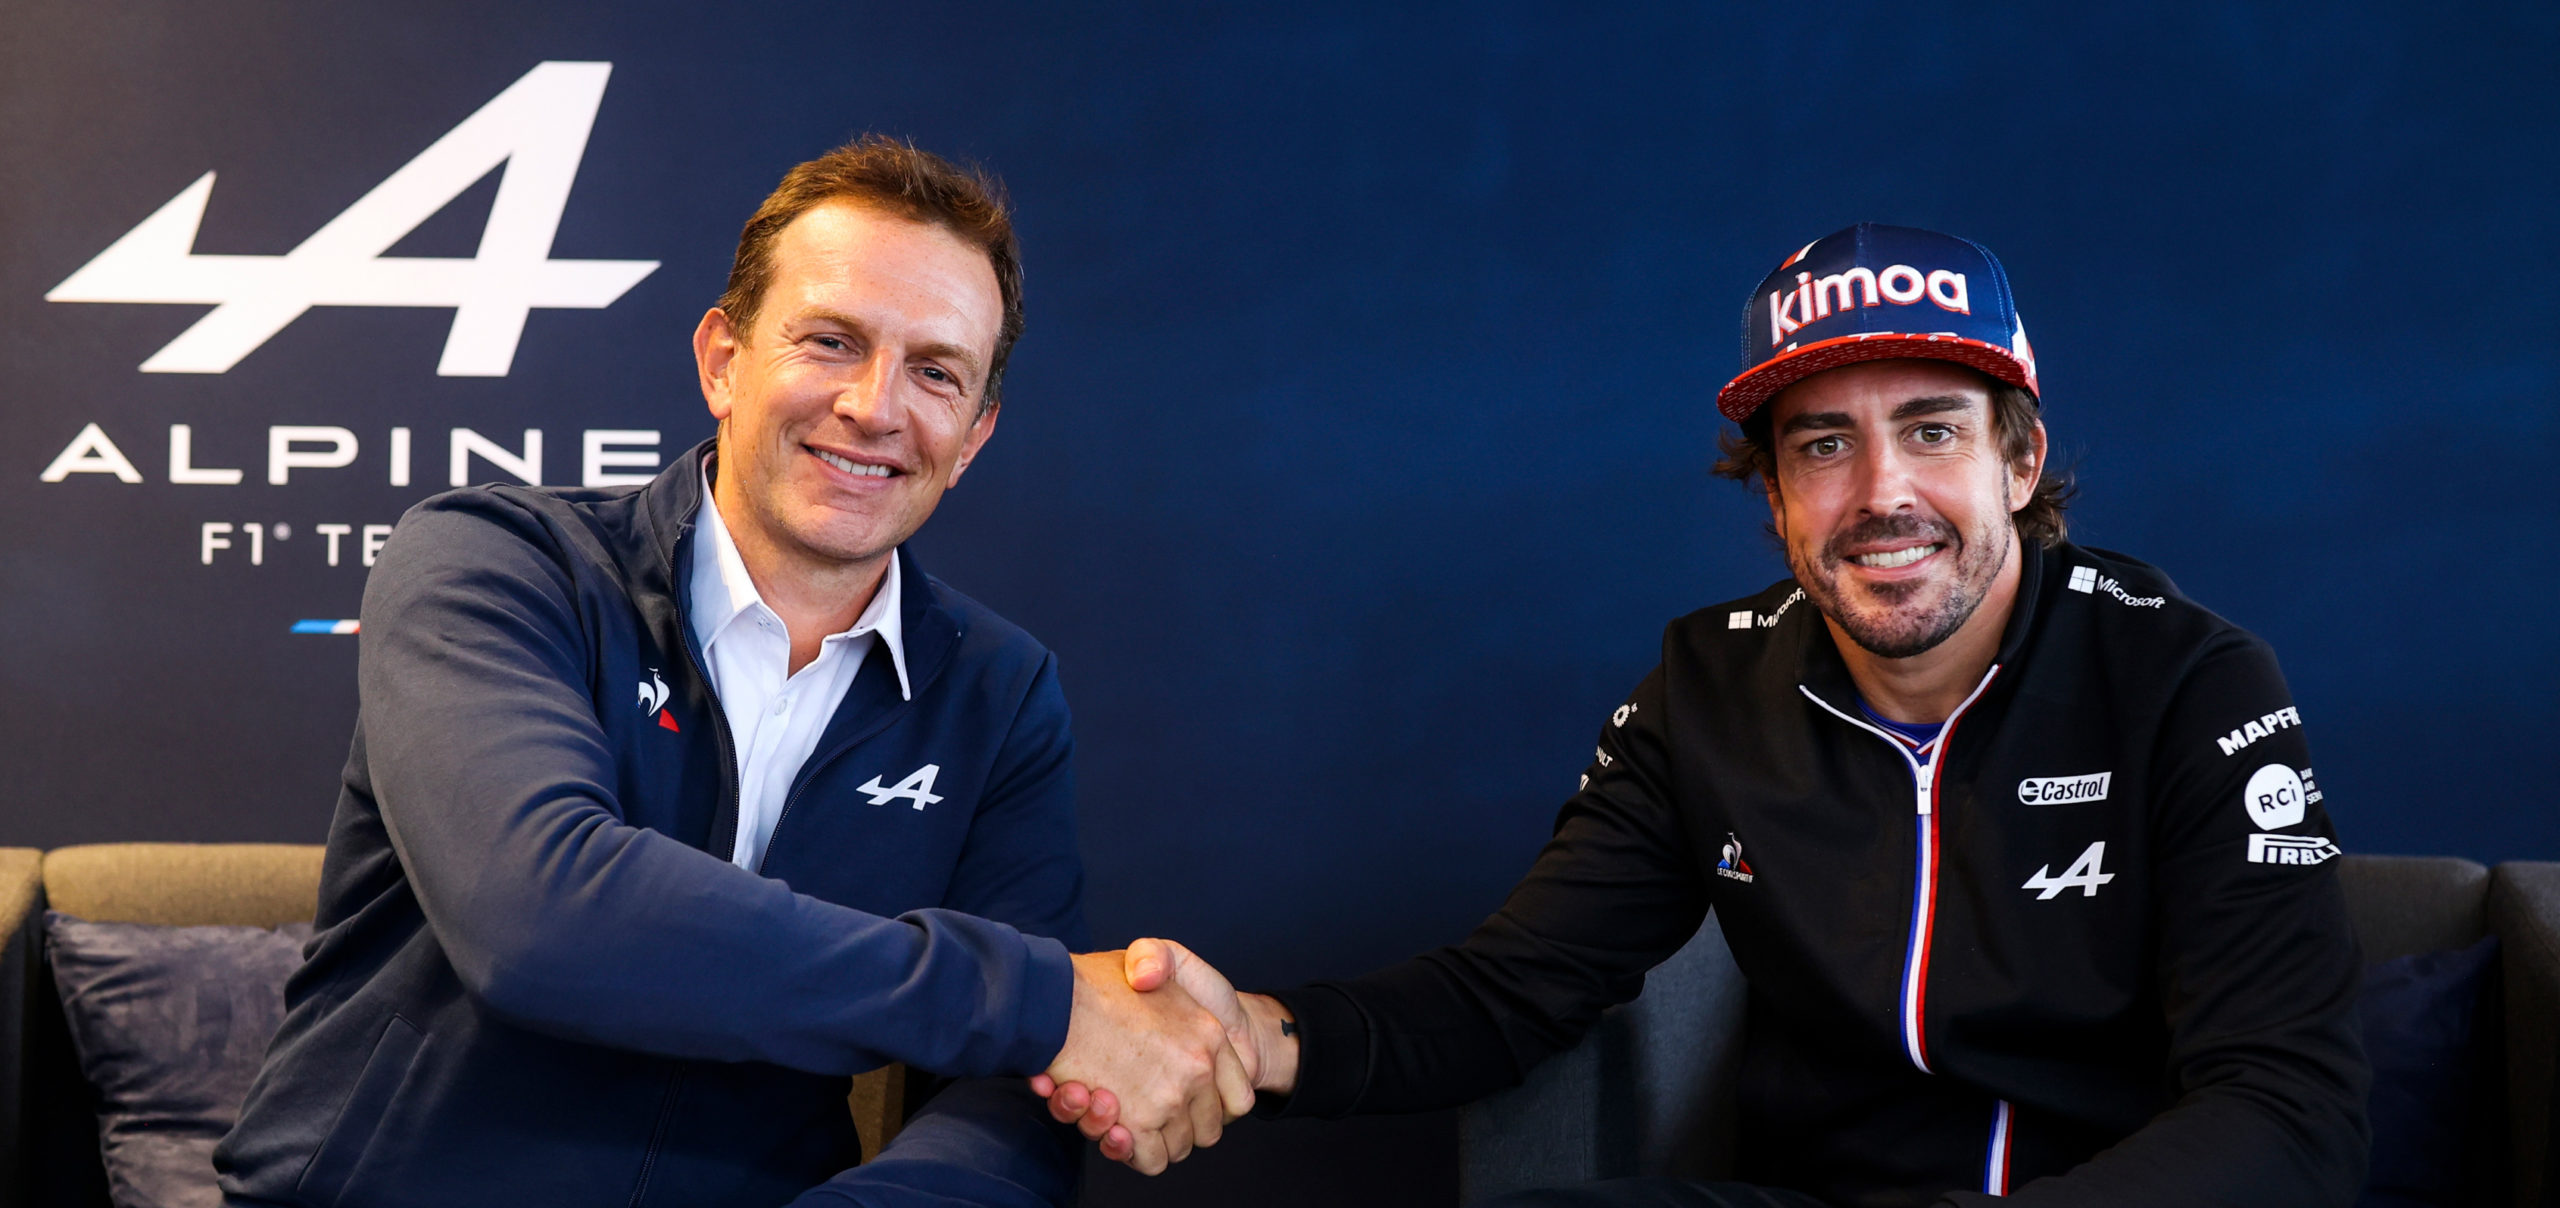 Fernando Alonso amplia su vinculación con Alpine F1 hasta 2022